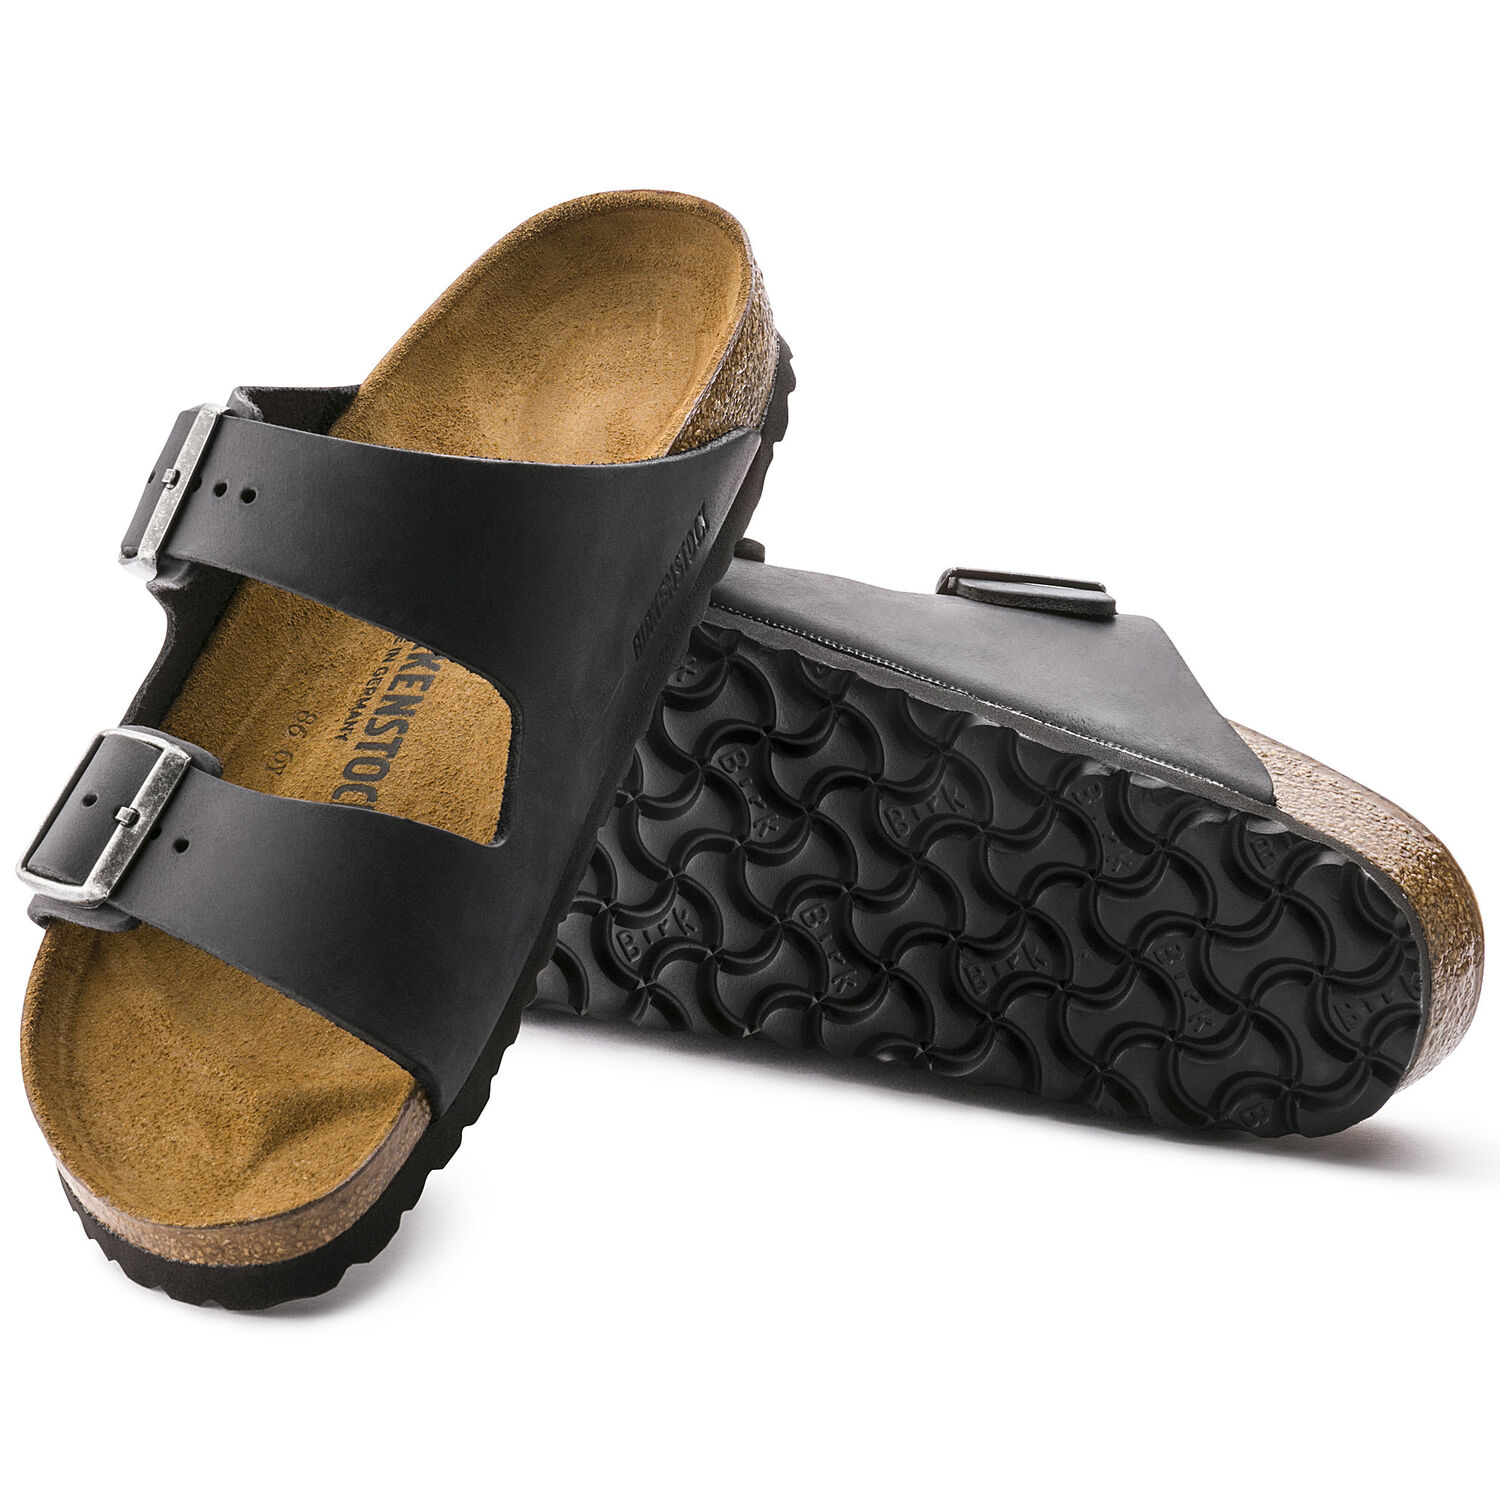 Suicoke Suede Sandal | Suede sandals, Sandals, Suede